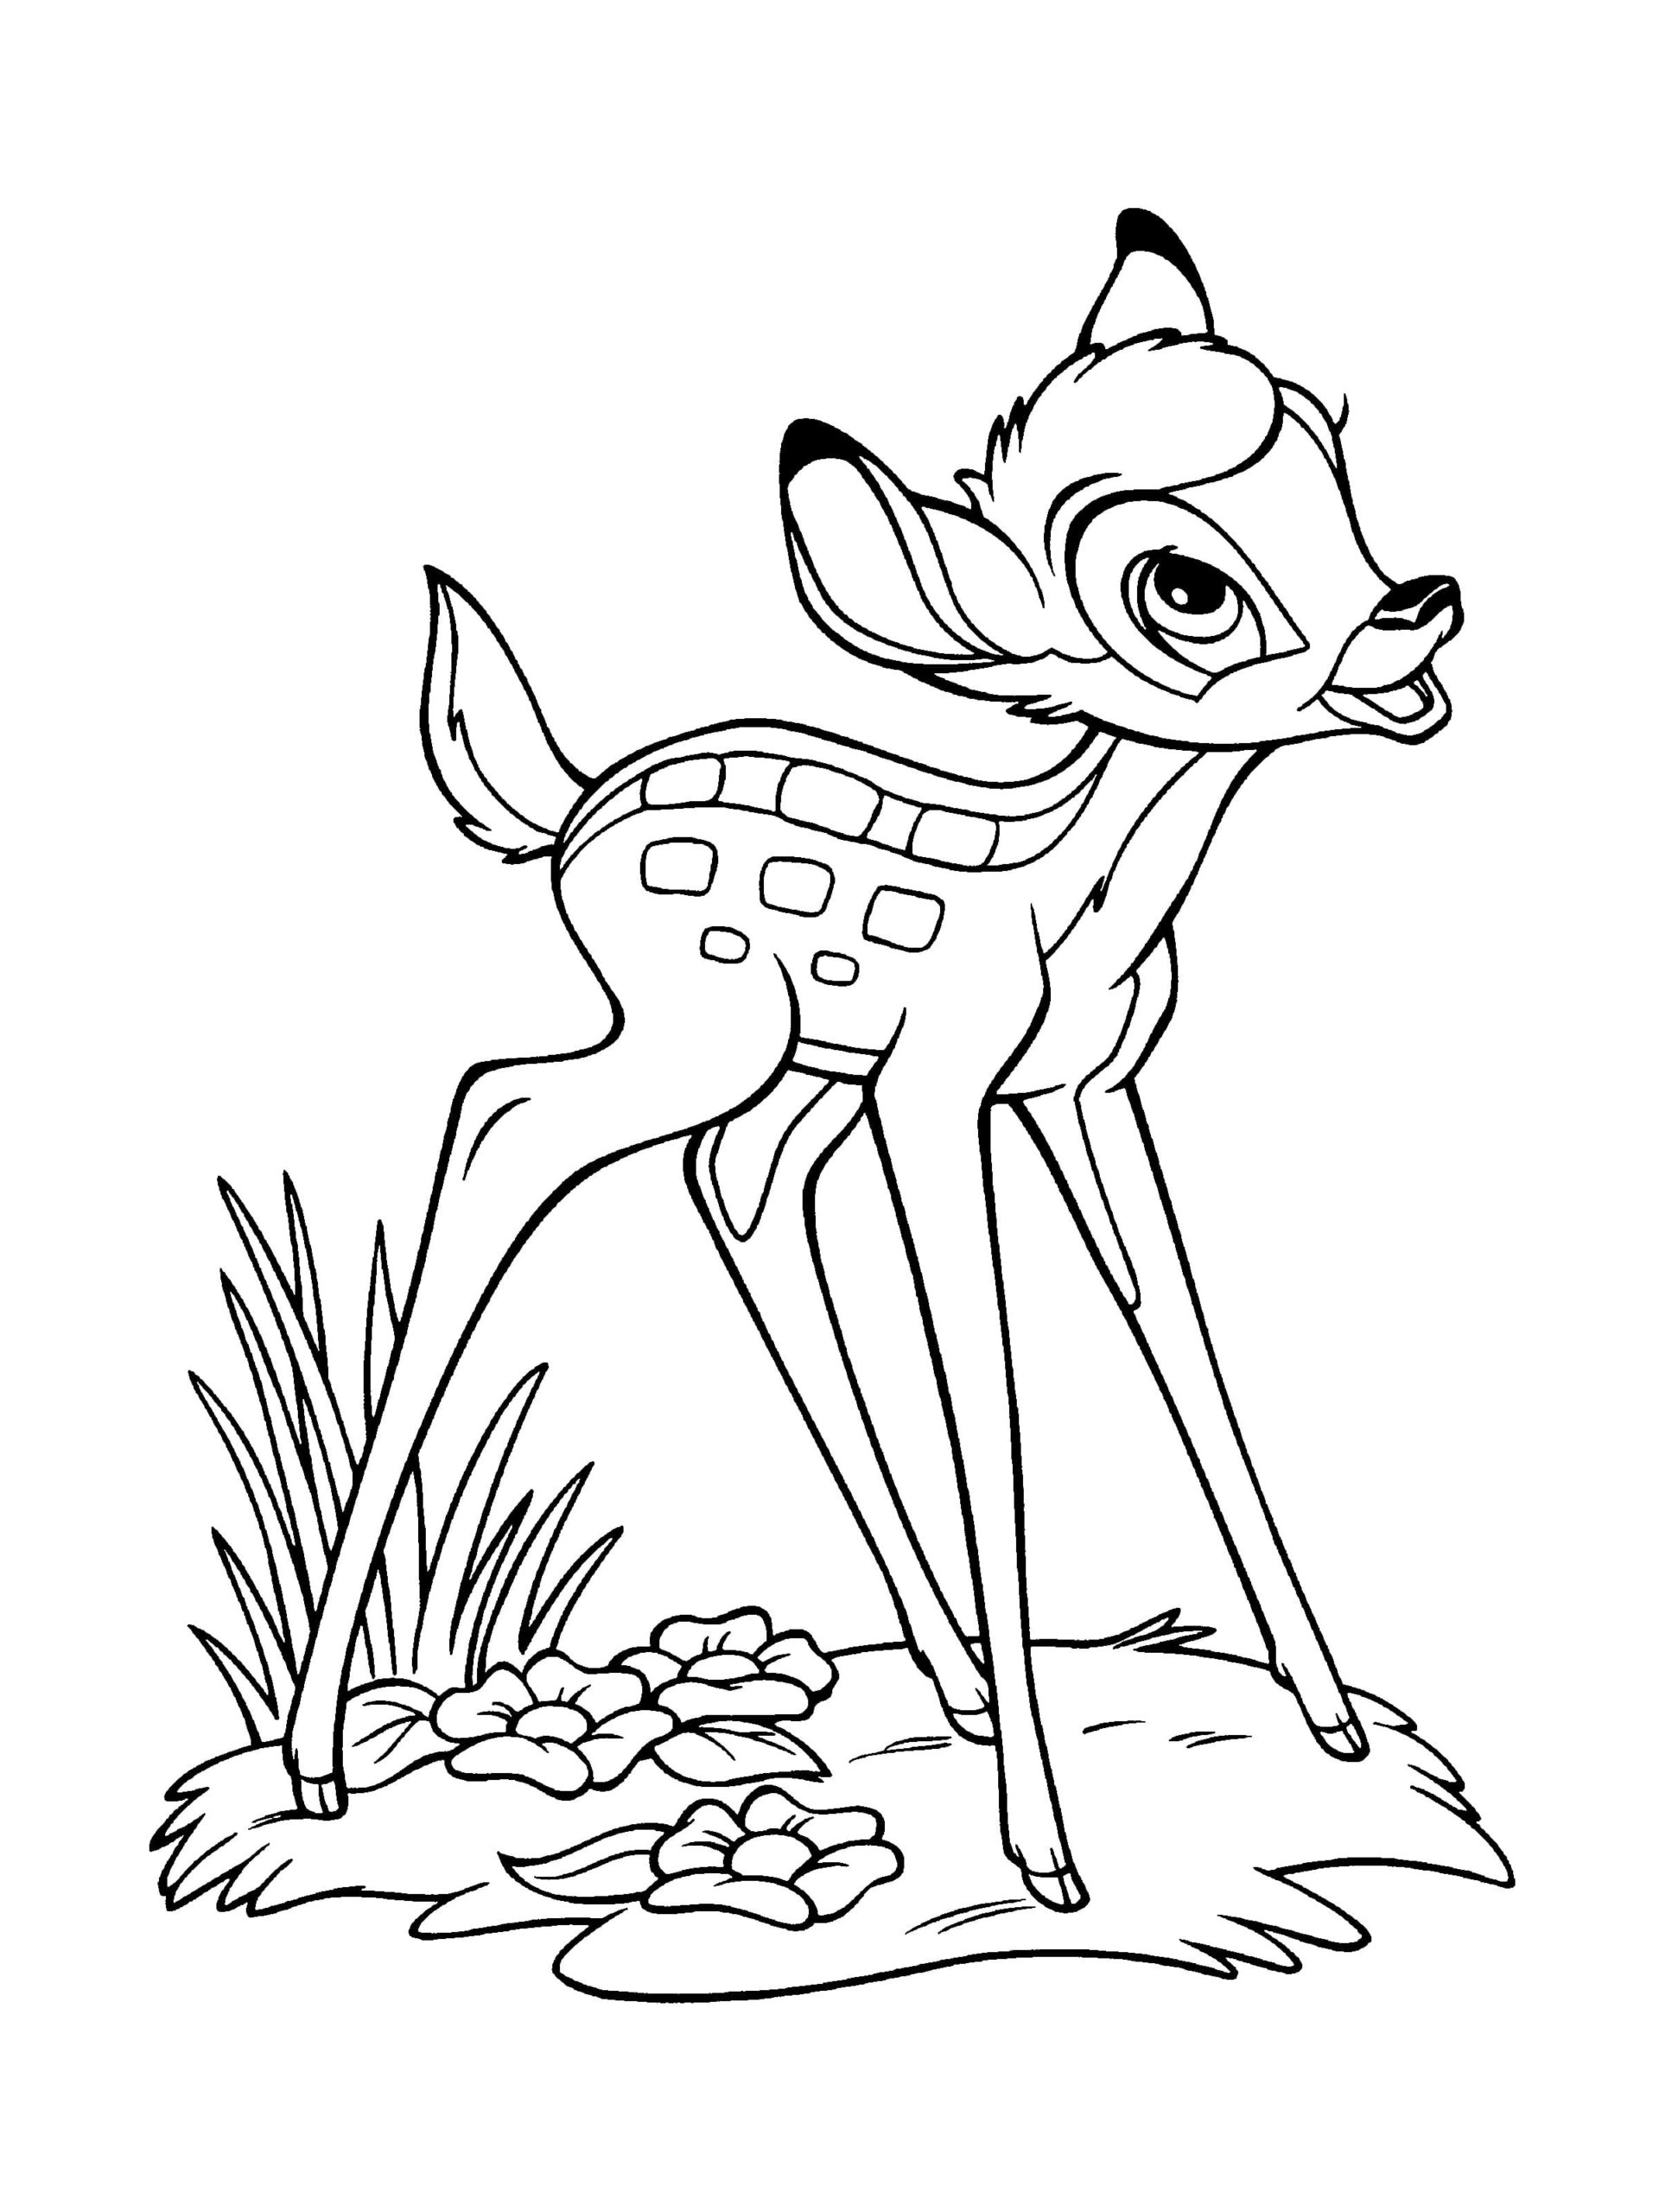 Ausmalbilder Bambi. Kostenlose Malvorlagen für Kinder